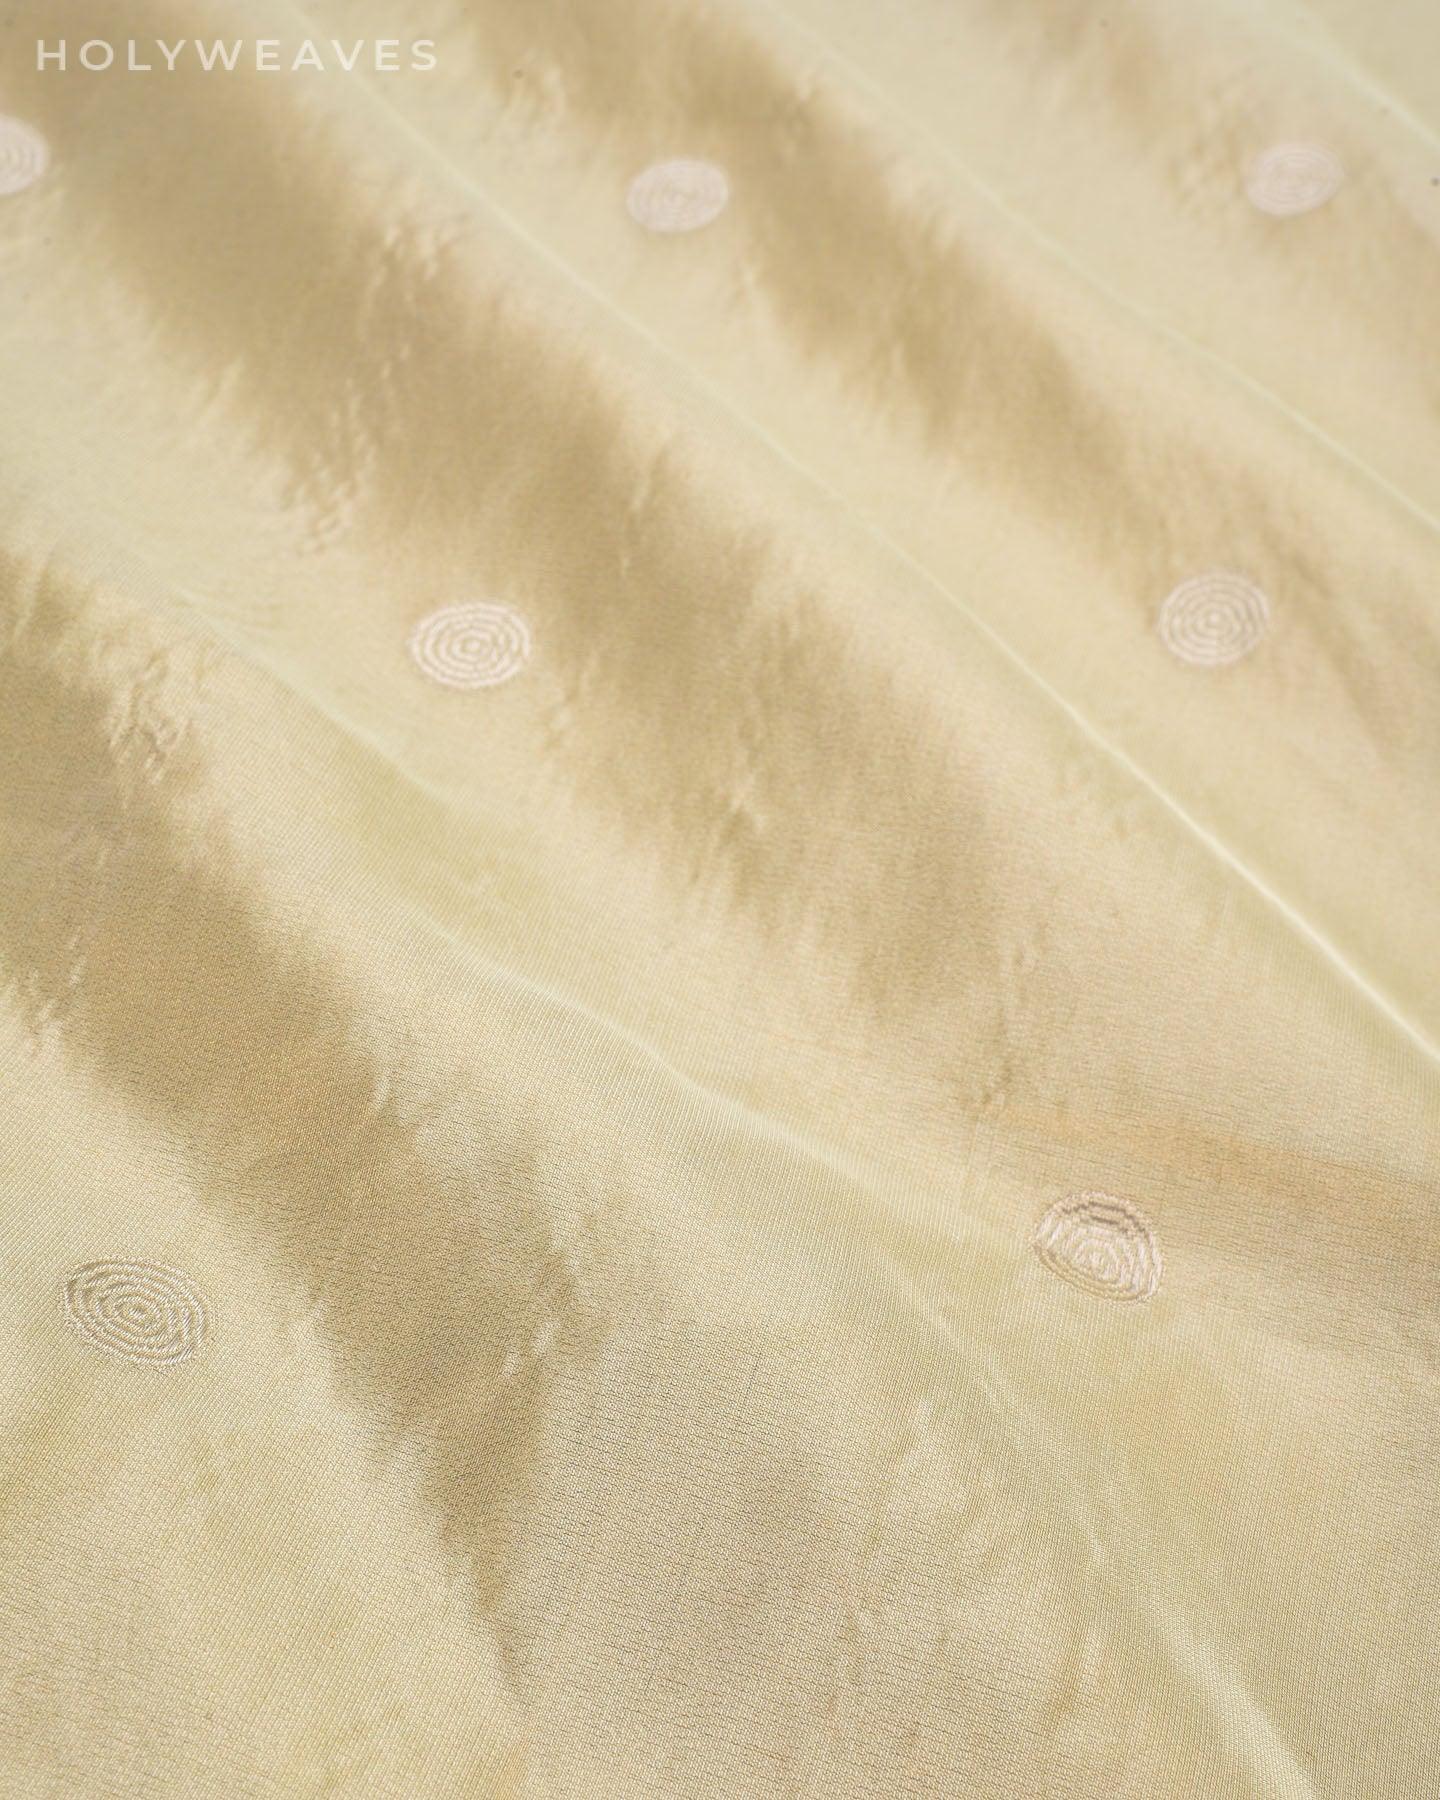 Laurel Green Banarasi Kadhuan Brocade Handwoven Katan Tissue Saree - By HolyWeaves, Benares